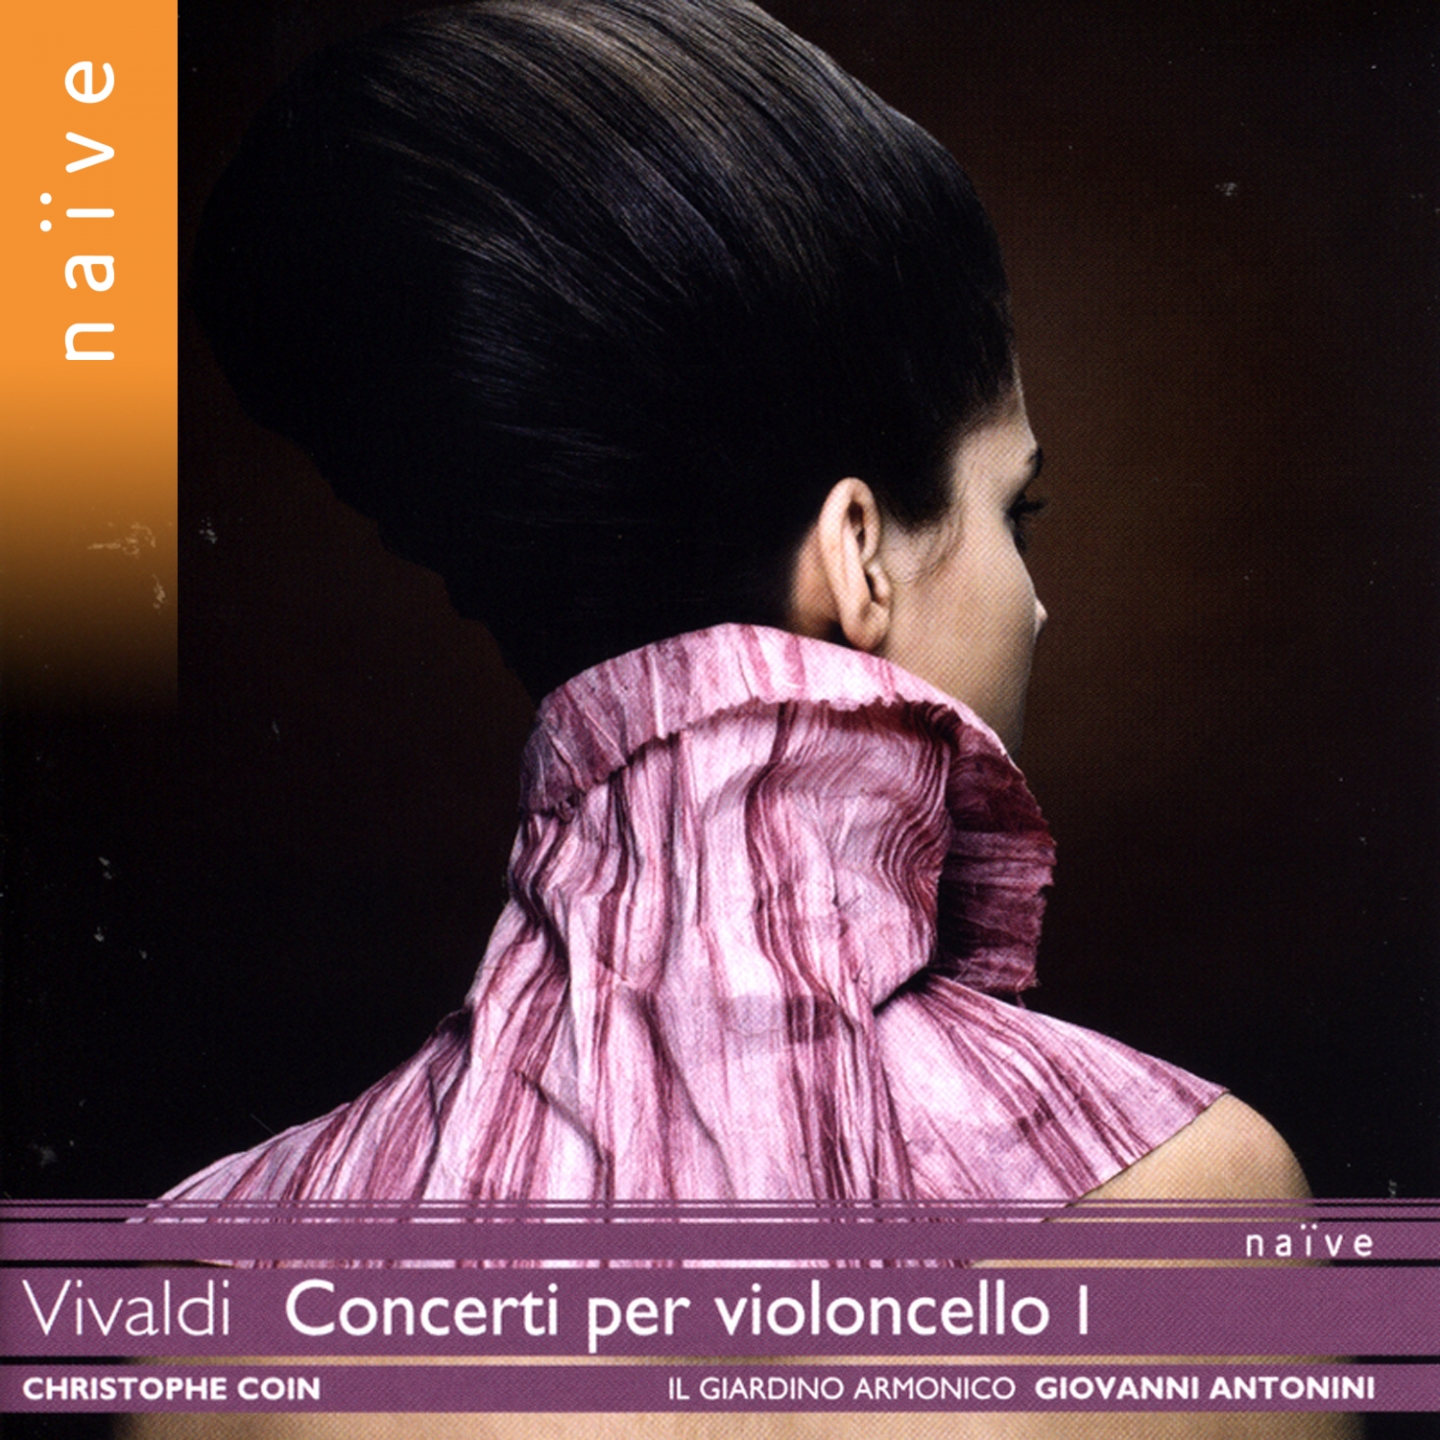 Cello Concerto in E Minor, RV 409: II. Allegro - Adagio